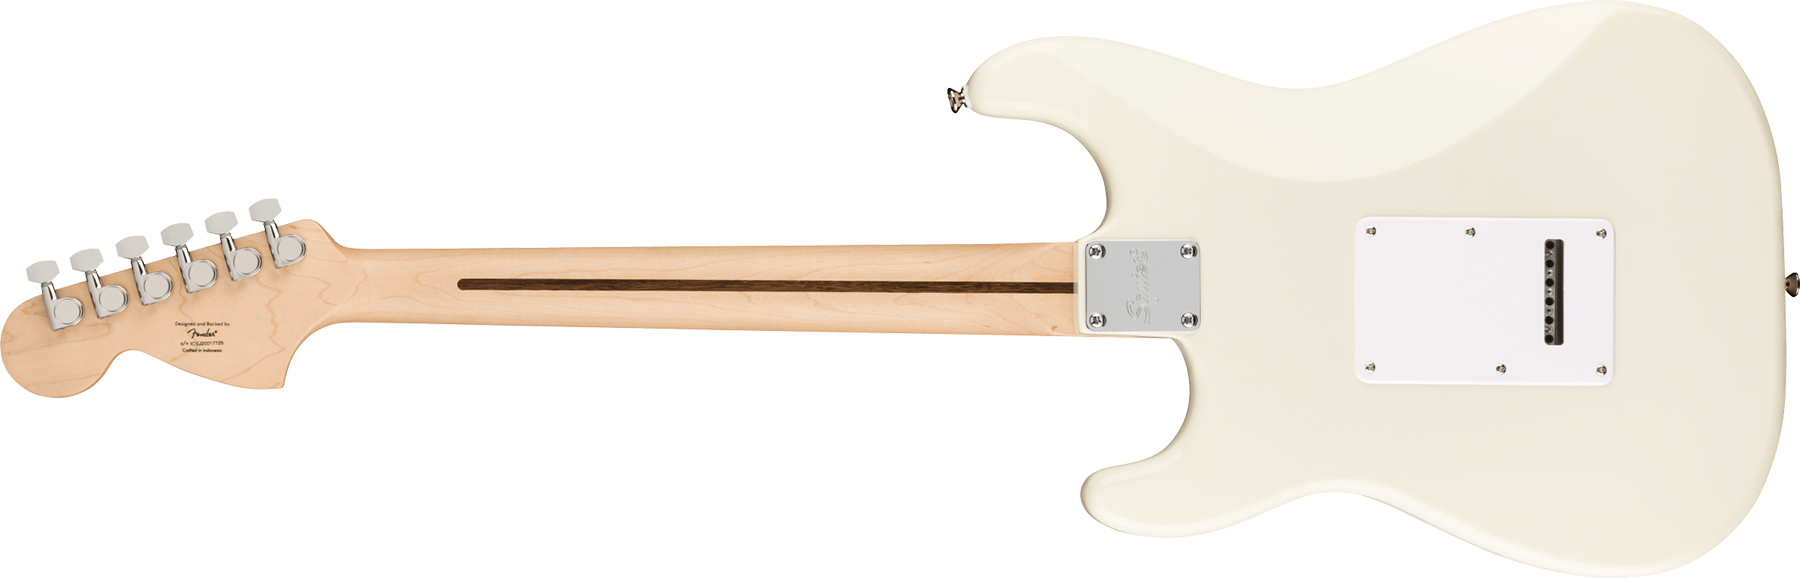 Squier Strat Affinity 2021 Sss Trem Mn - Olympic White - Elektrische gitaar in Str-vorm - Variation 1